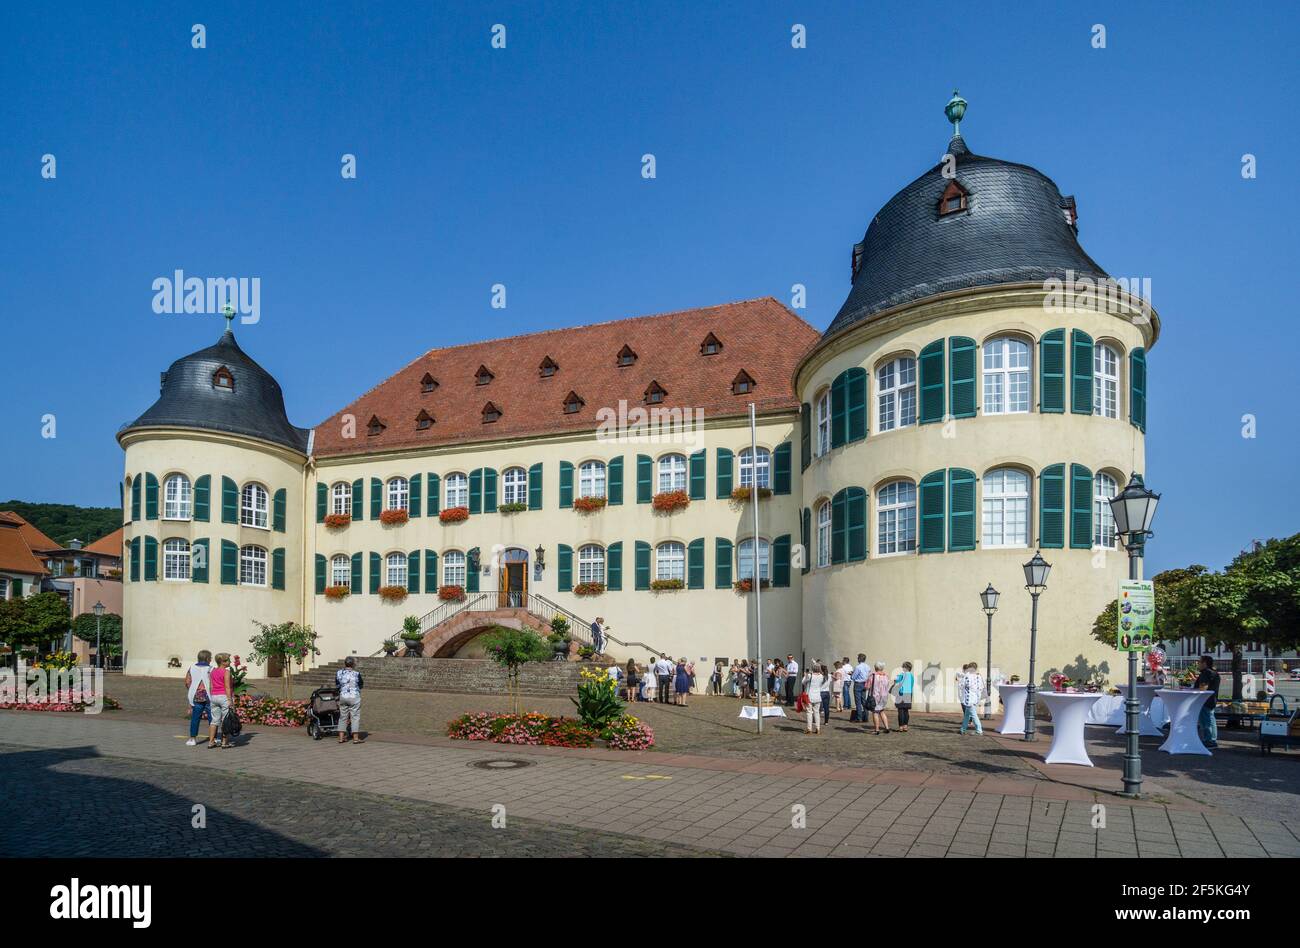 Recepción de boda en el castillo de Bad Bergzabern, la ruta alemana del vino, Renania-Palatinado, Alemania Foto de stock